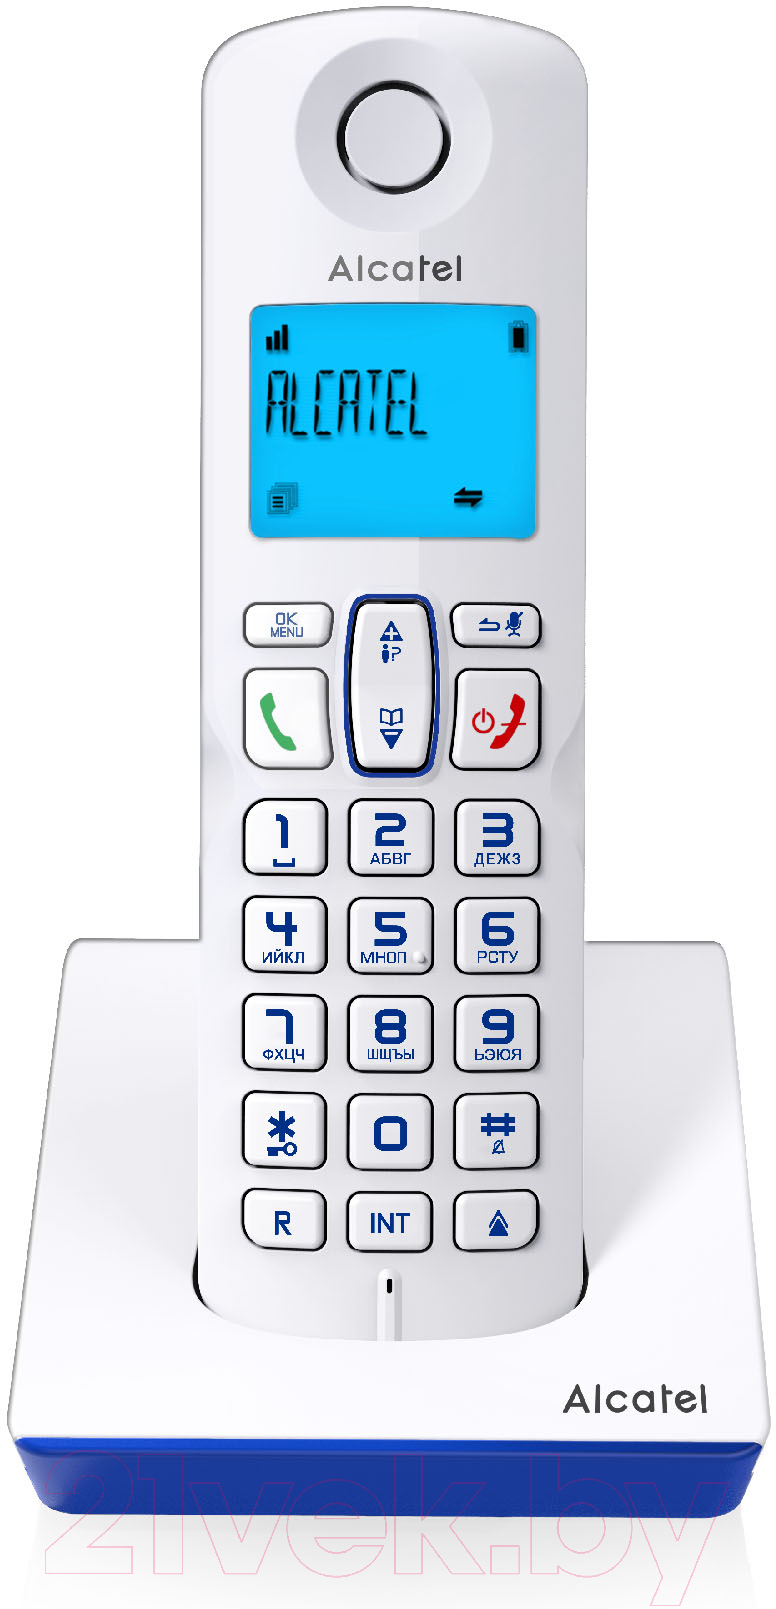 Беспроводной телефон Alcatel S230